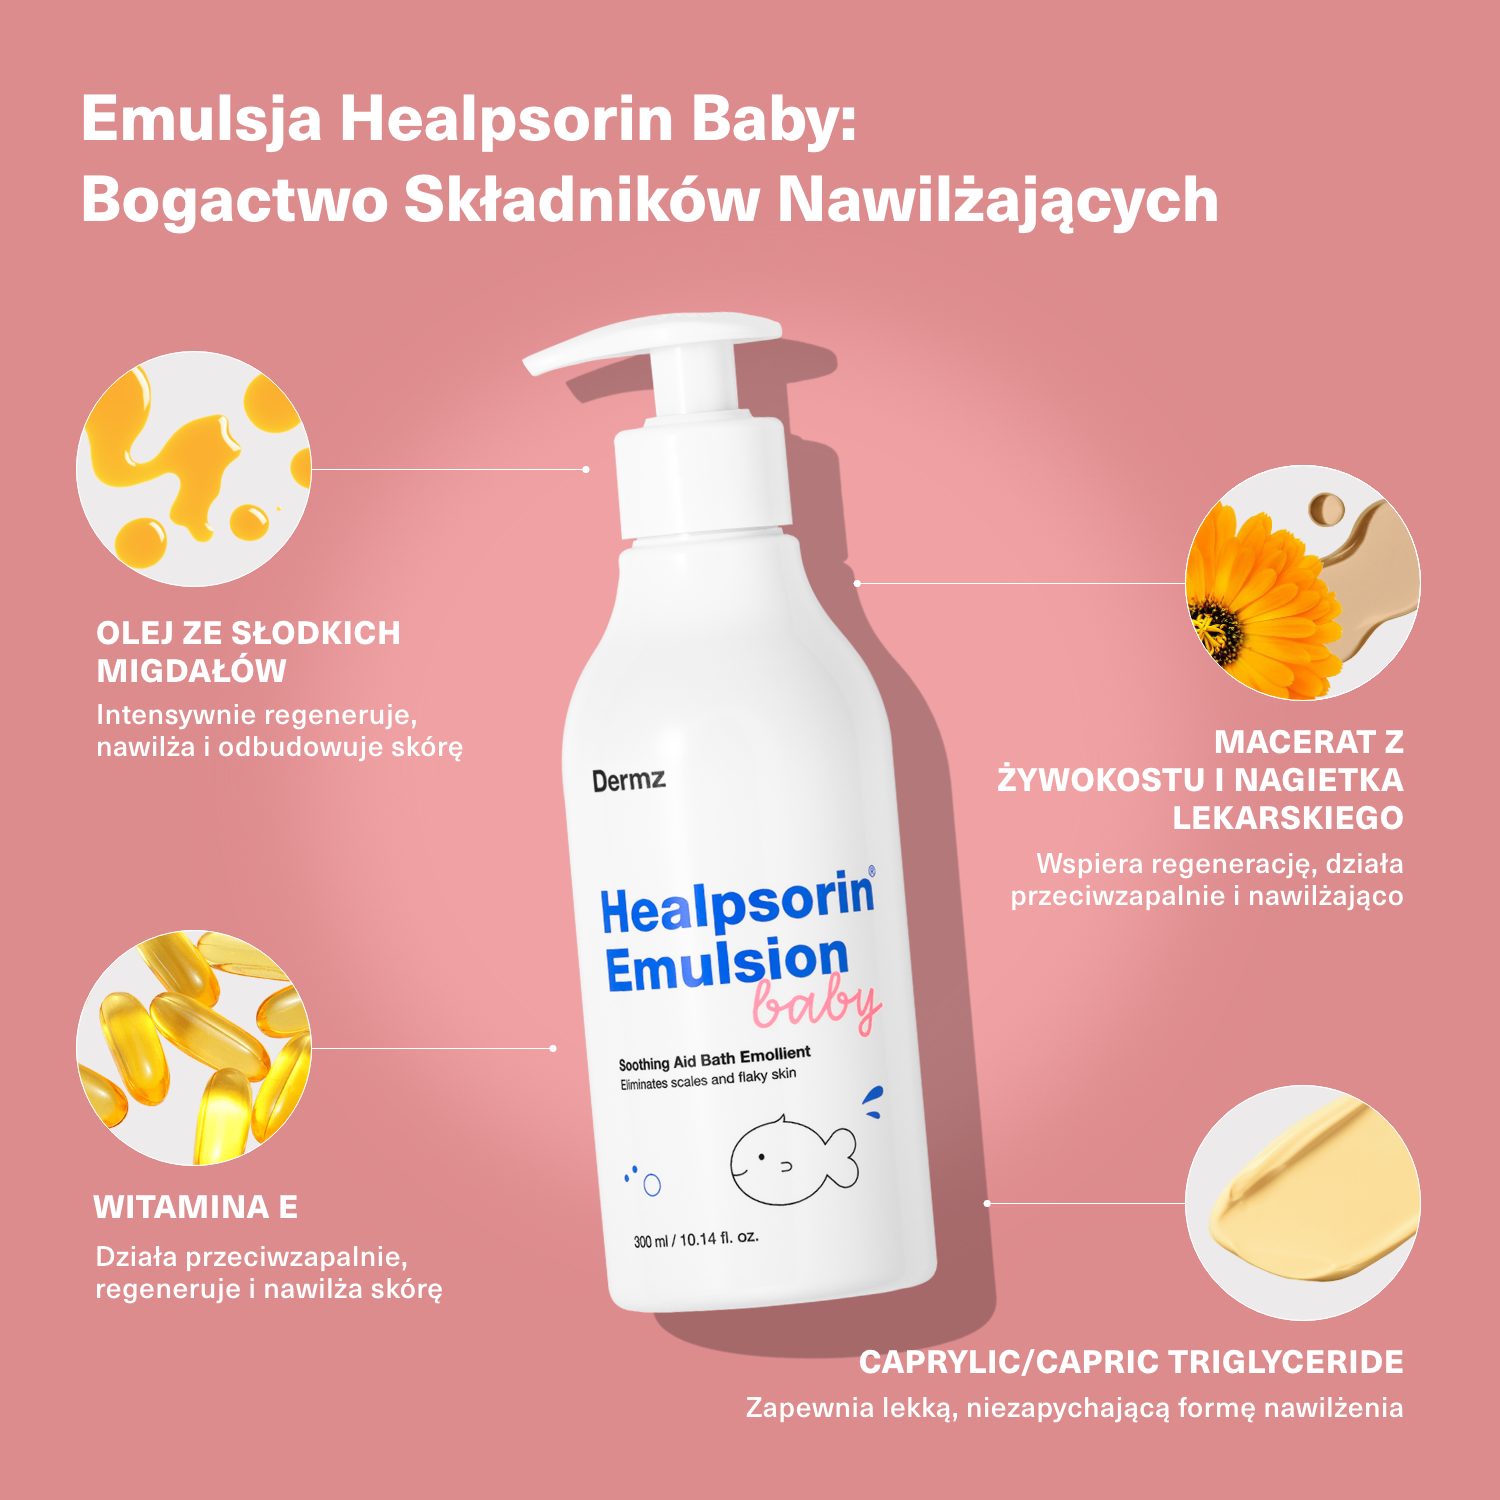 Emulsja Healpsorin Baby